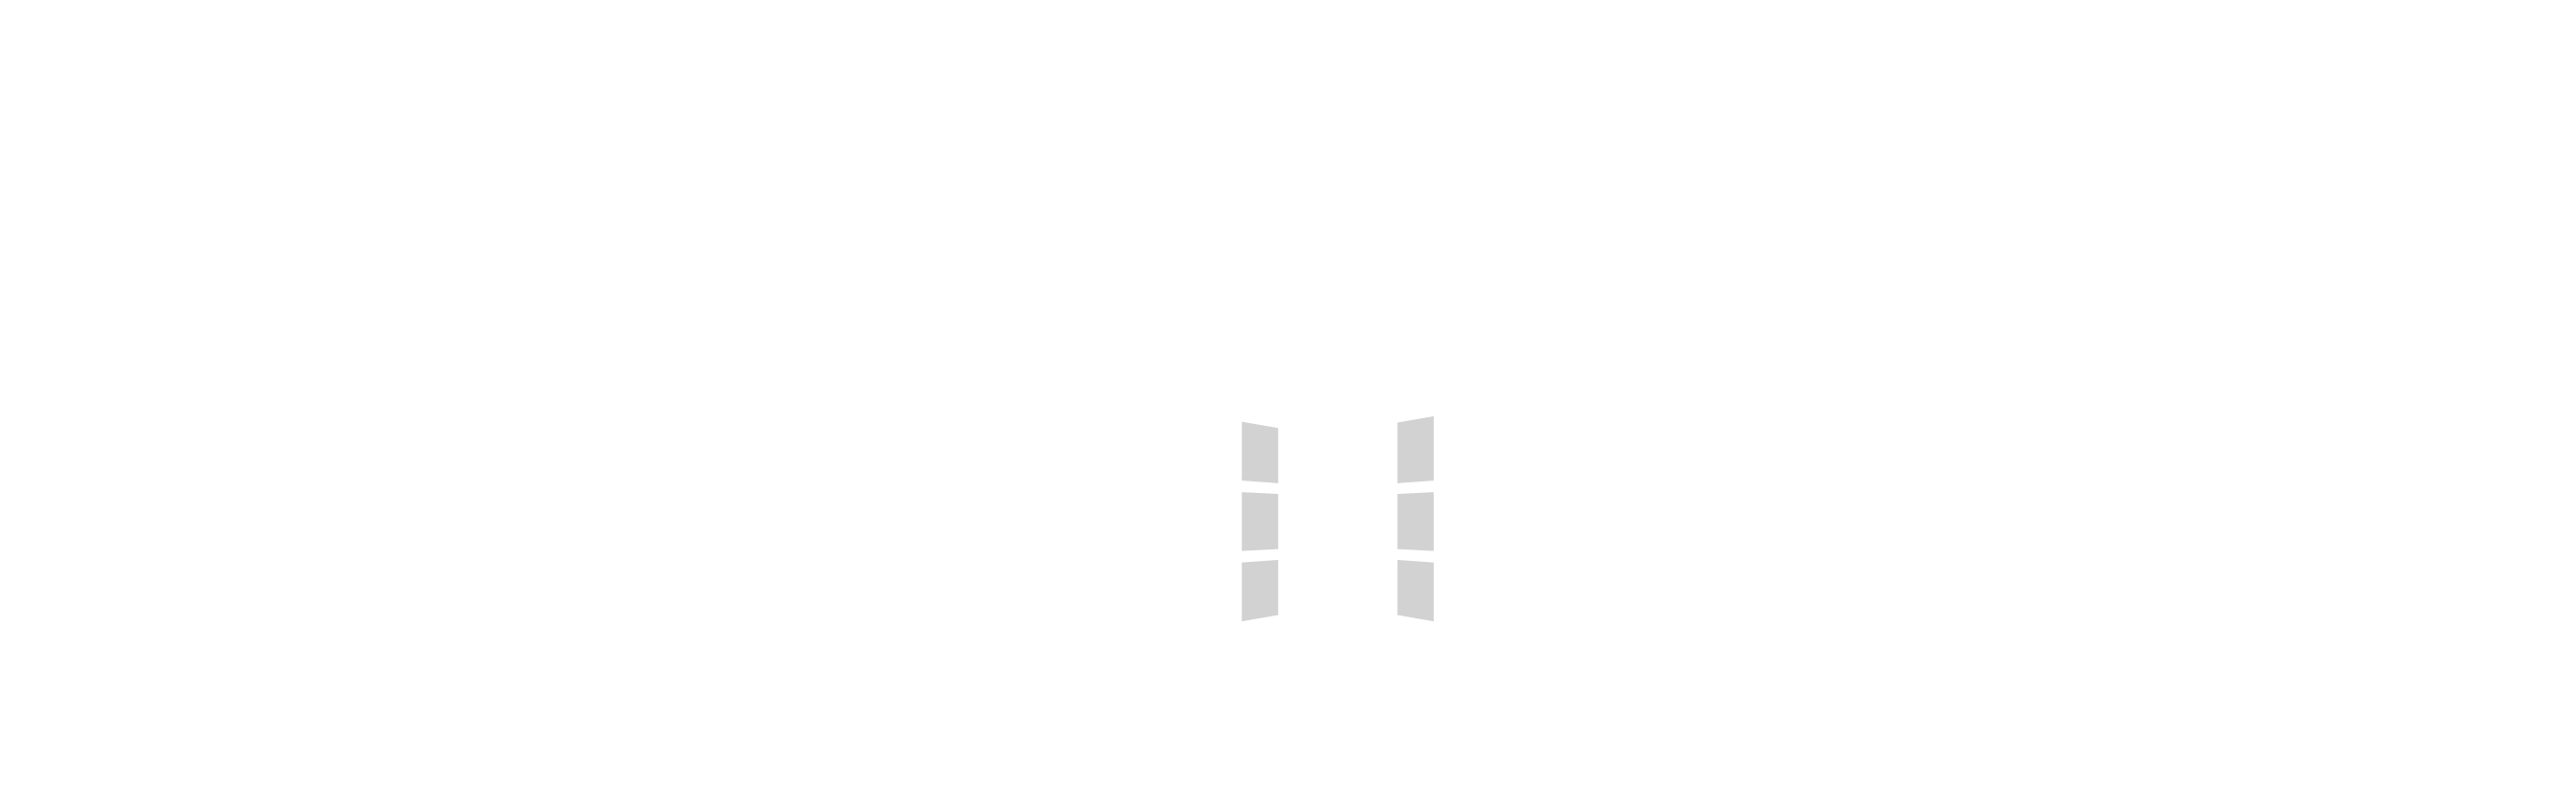 Colegio Maria Auxiliadora – Zaragoza